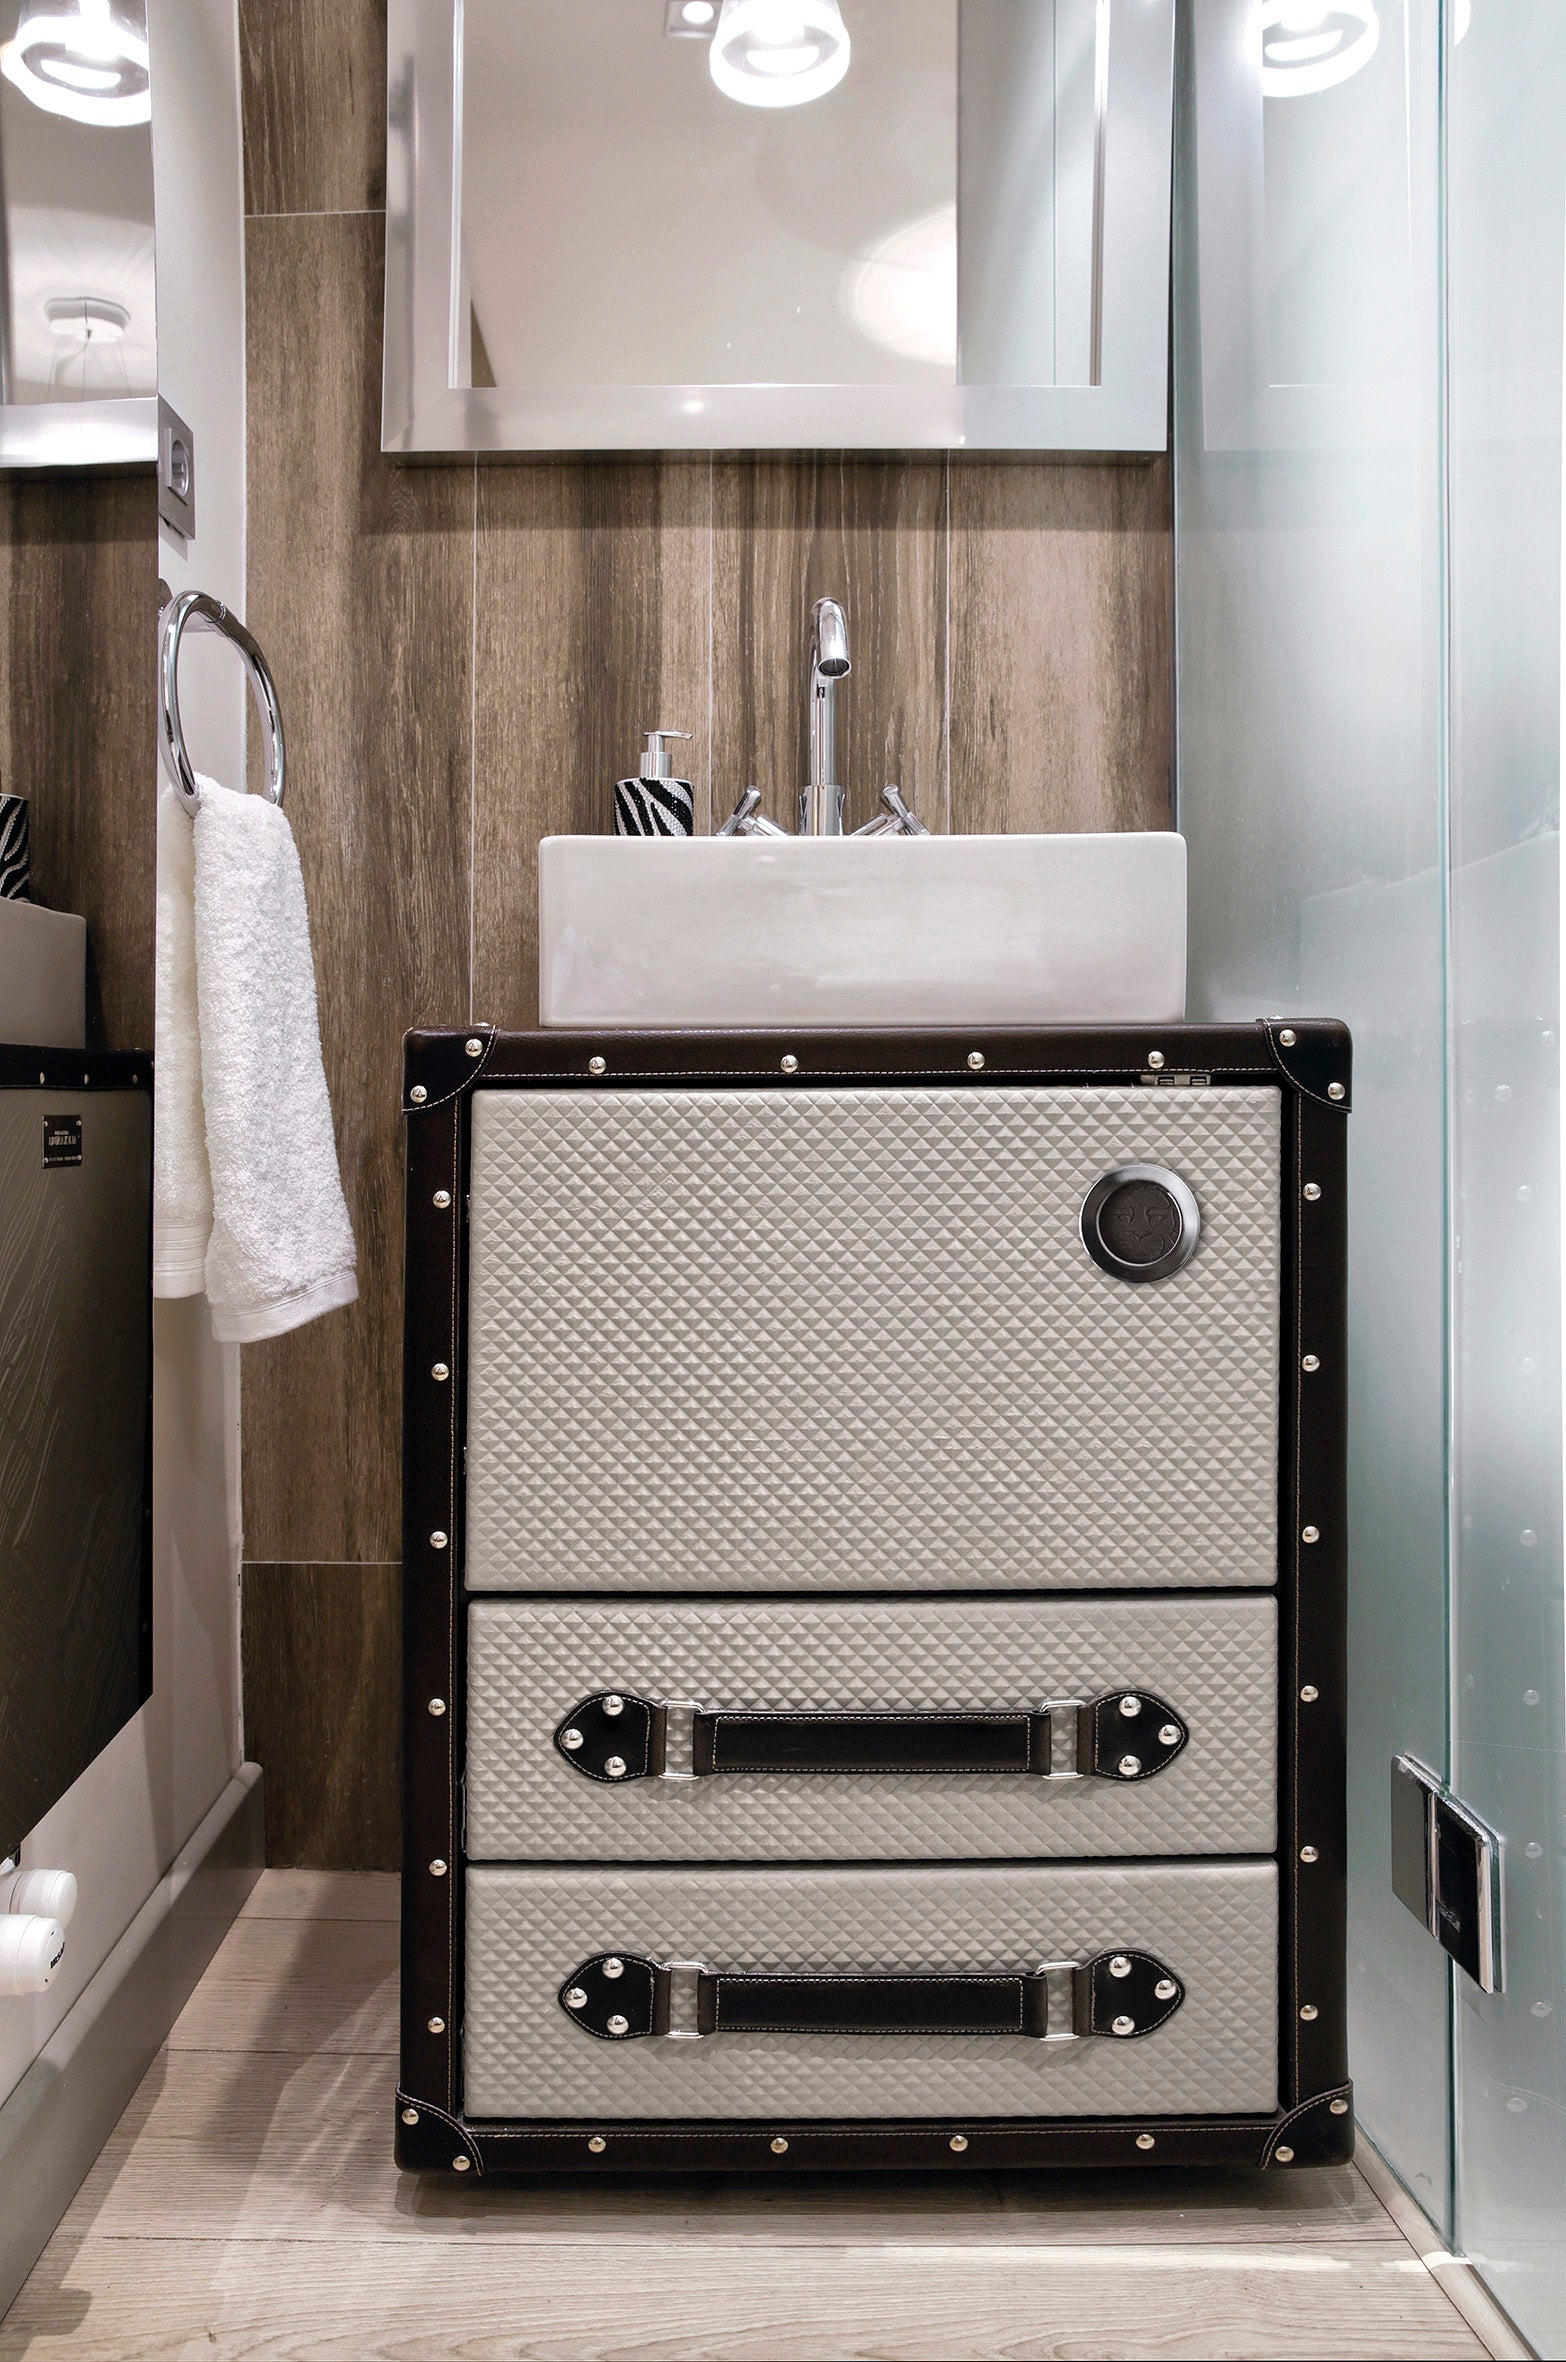 Traveler small bathroom vanity 21. Leather upholstered vanities. Smal –  secretbathstore